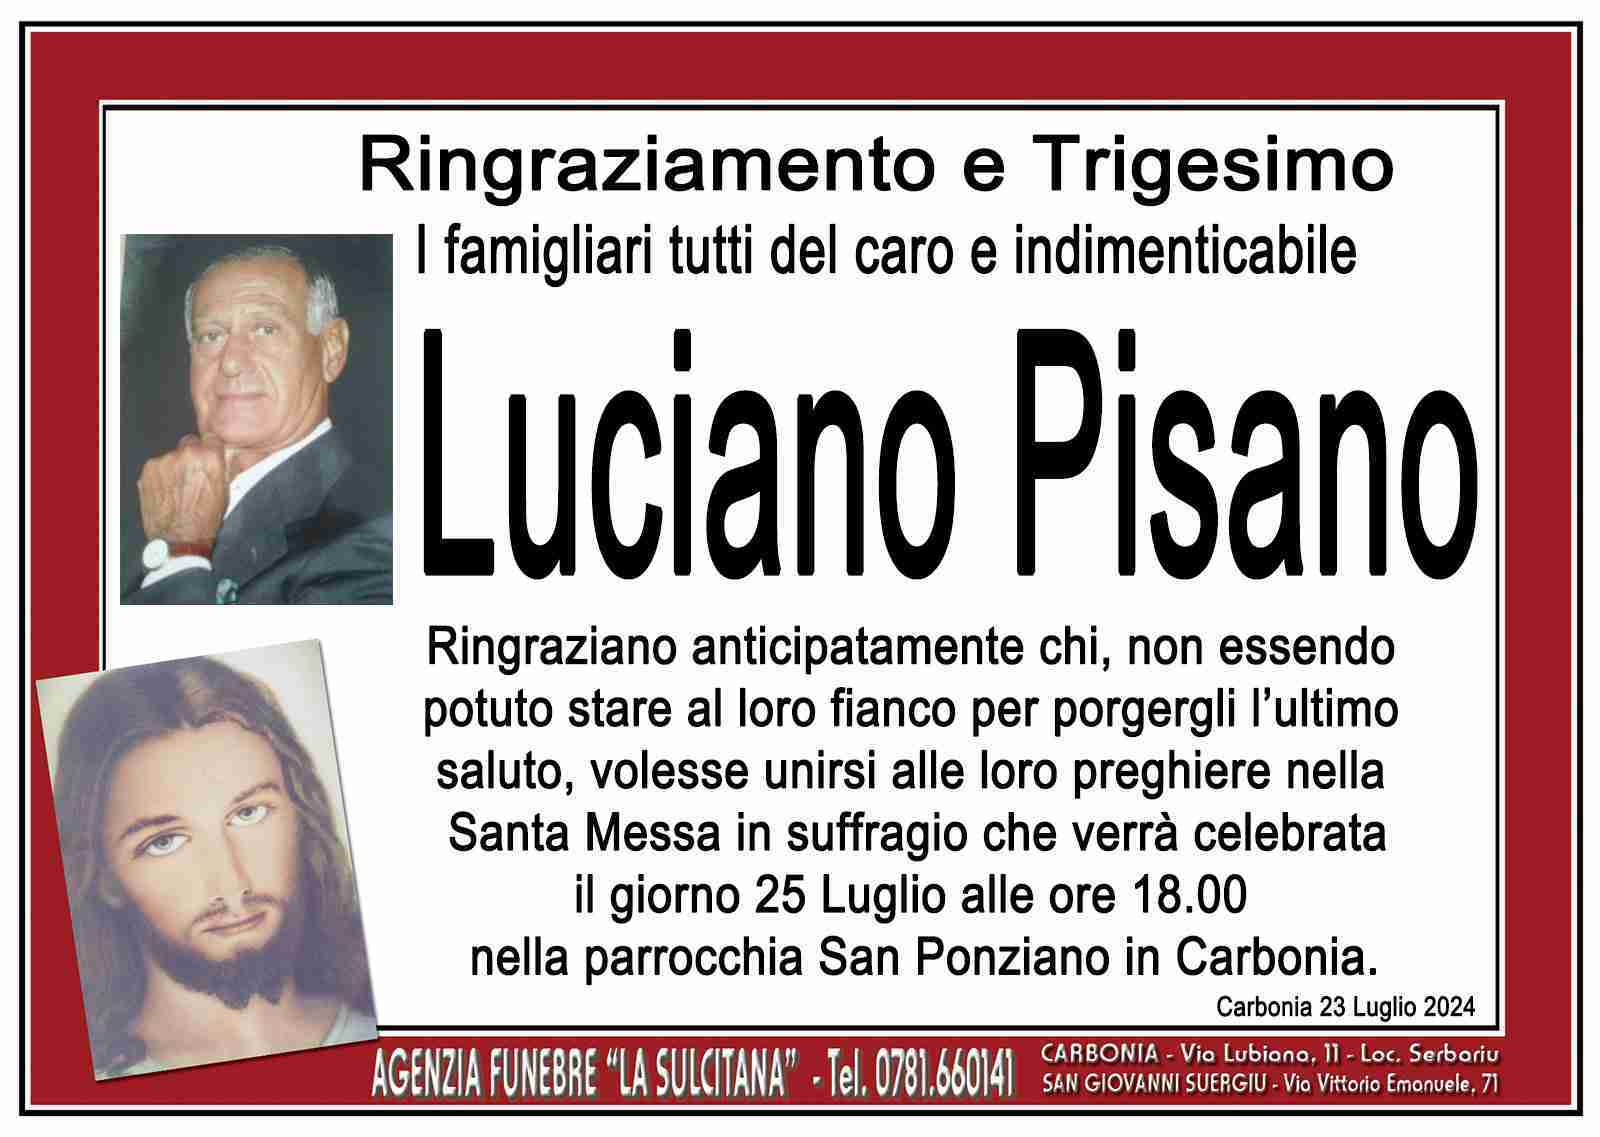 Luciano Pisano